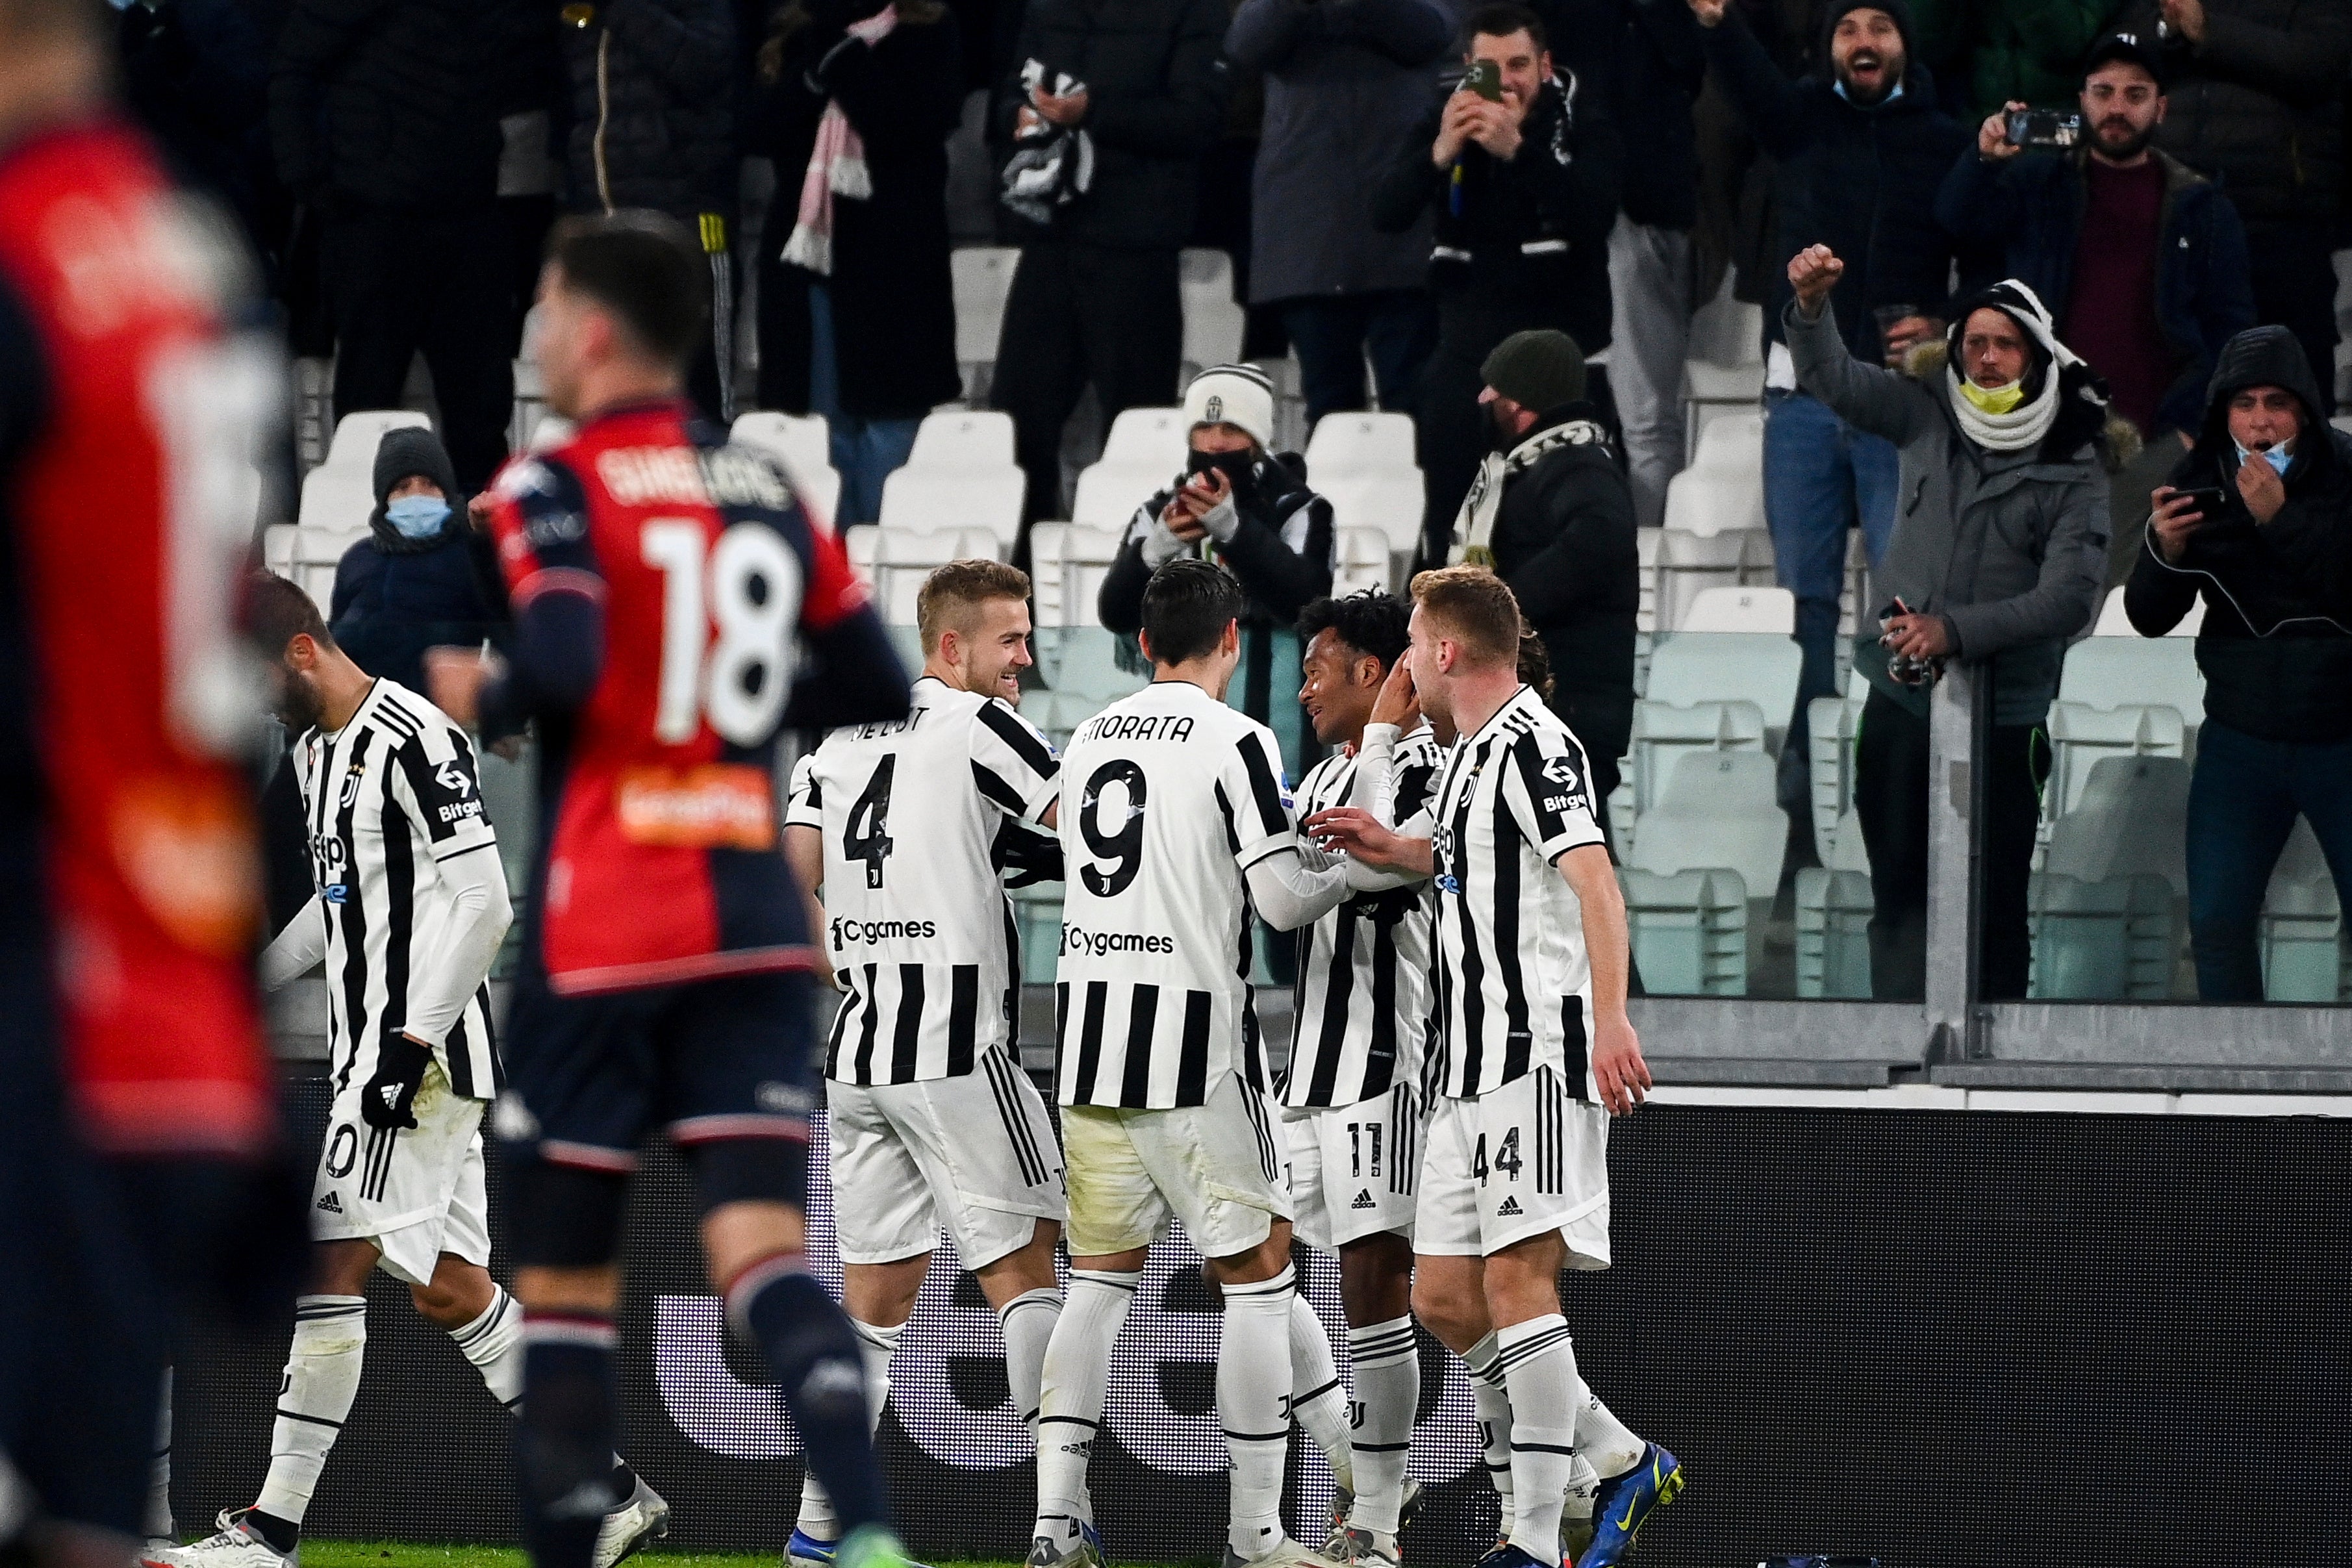 Genoa vs Juventus Nhận định trước trận đấu 0245 ngày 16/12